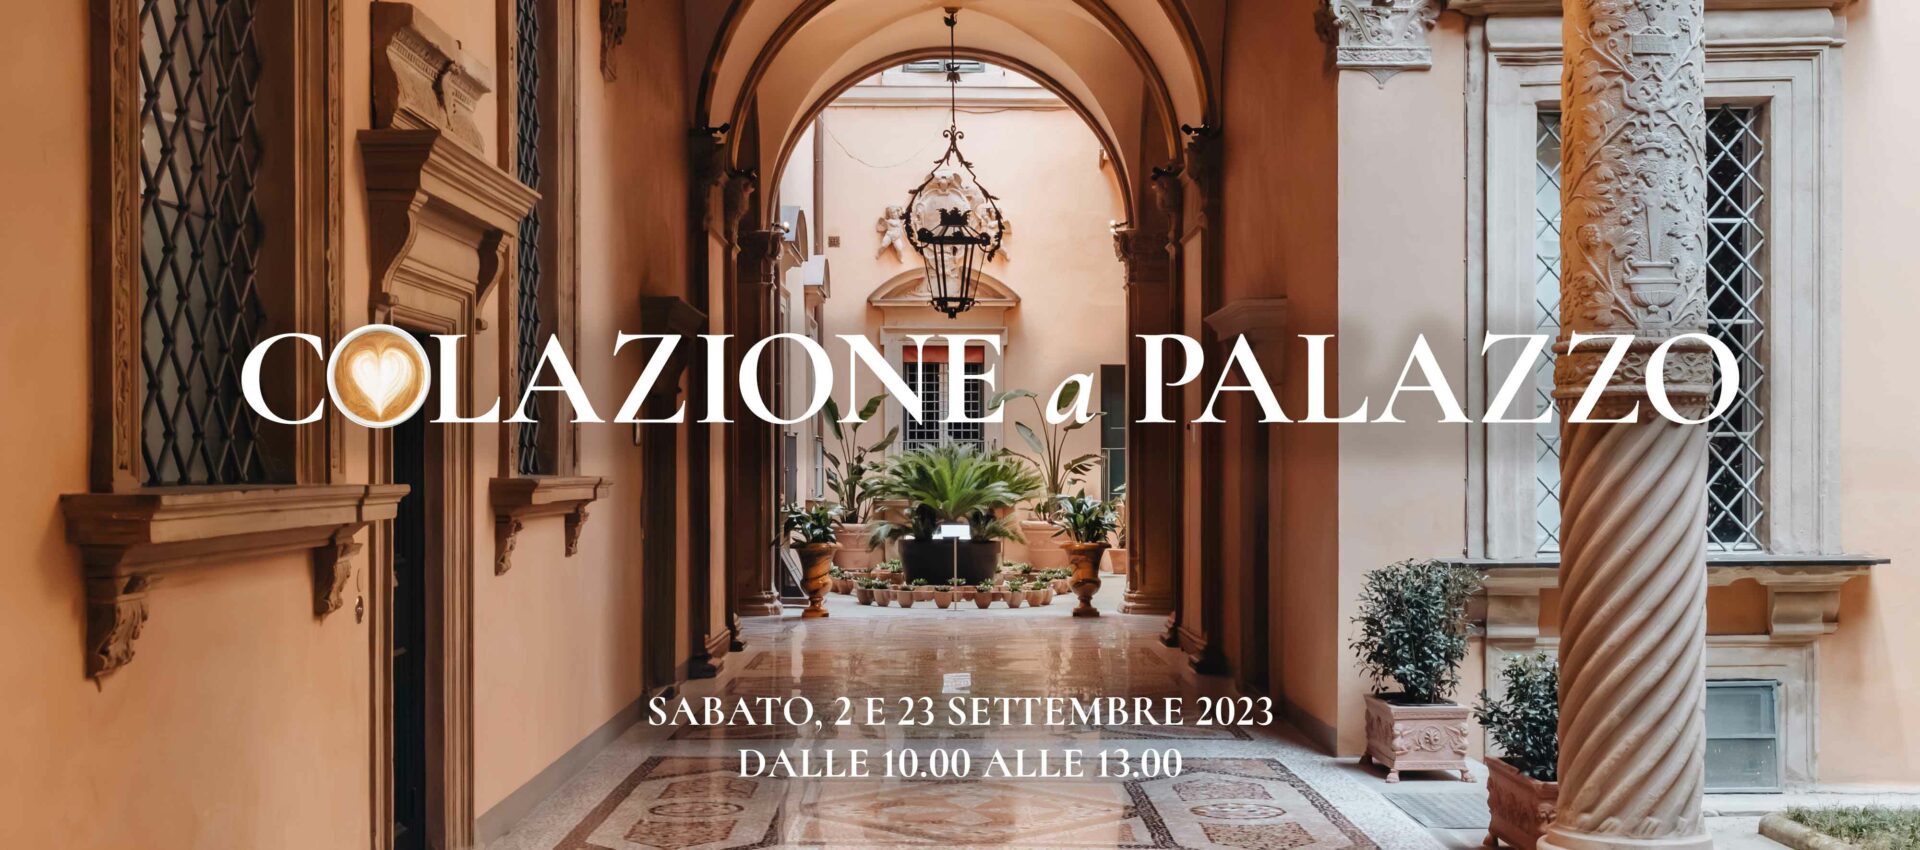 <p>Sabato 23 settembre 2023, dalle 10.00 alle 13.00</p>
<h2>Colazione a Palazzo</h2>
<h3>Visita guidata a Palazzo Boncompagni con colazione</h3>
